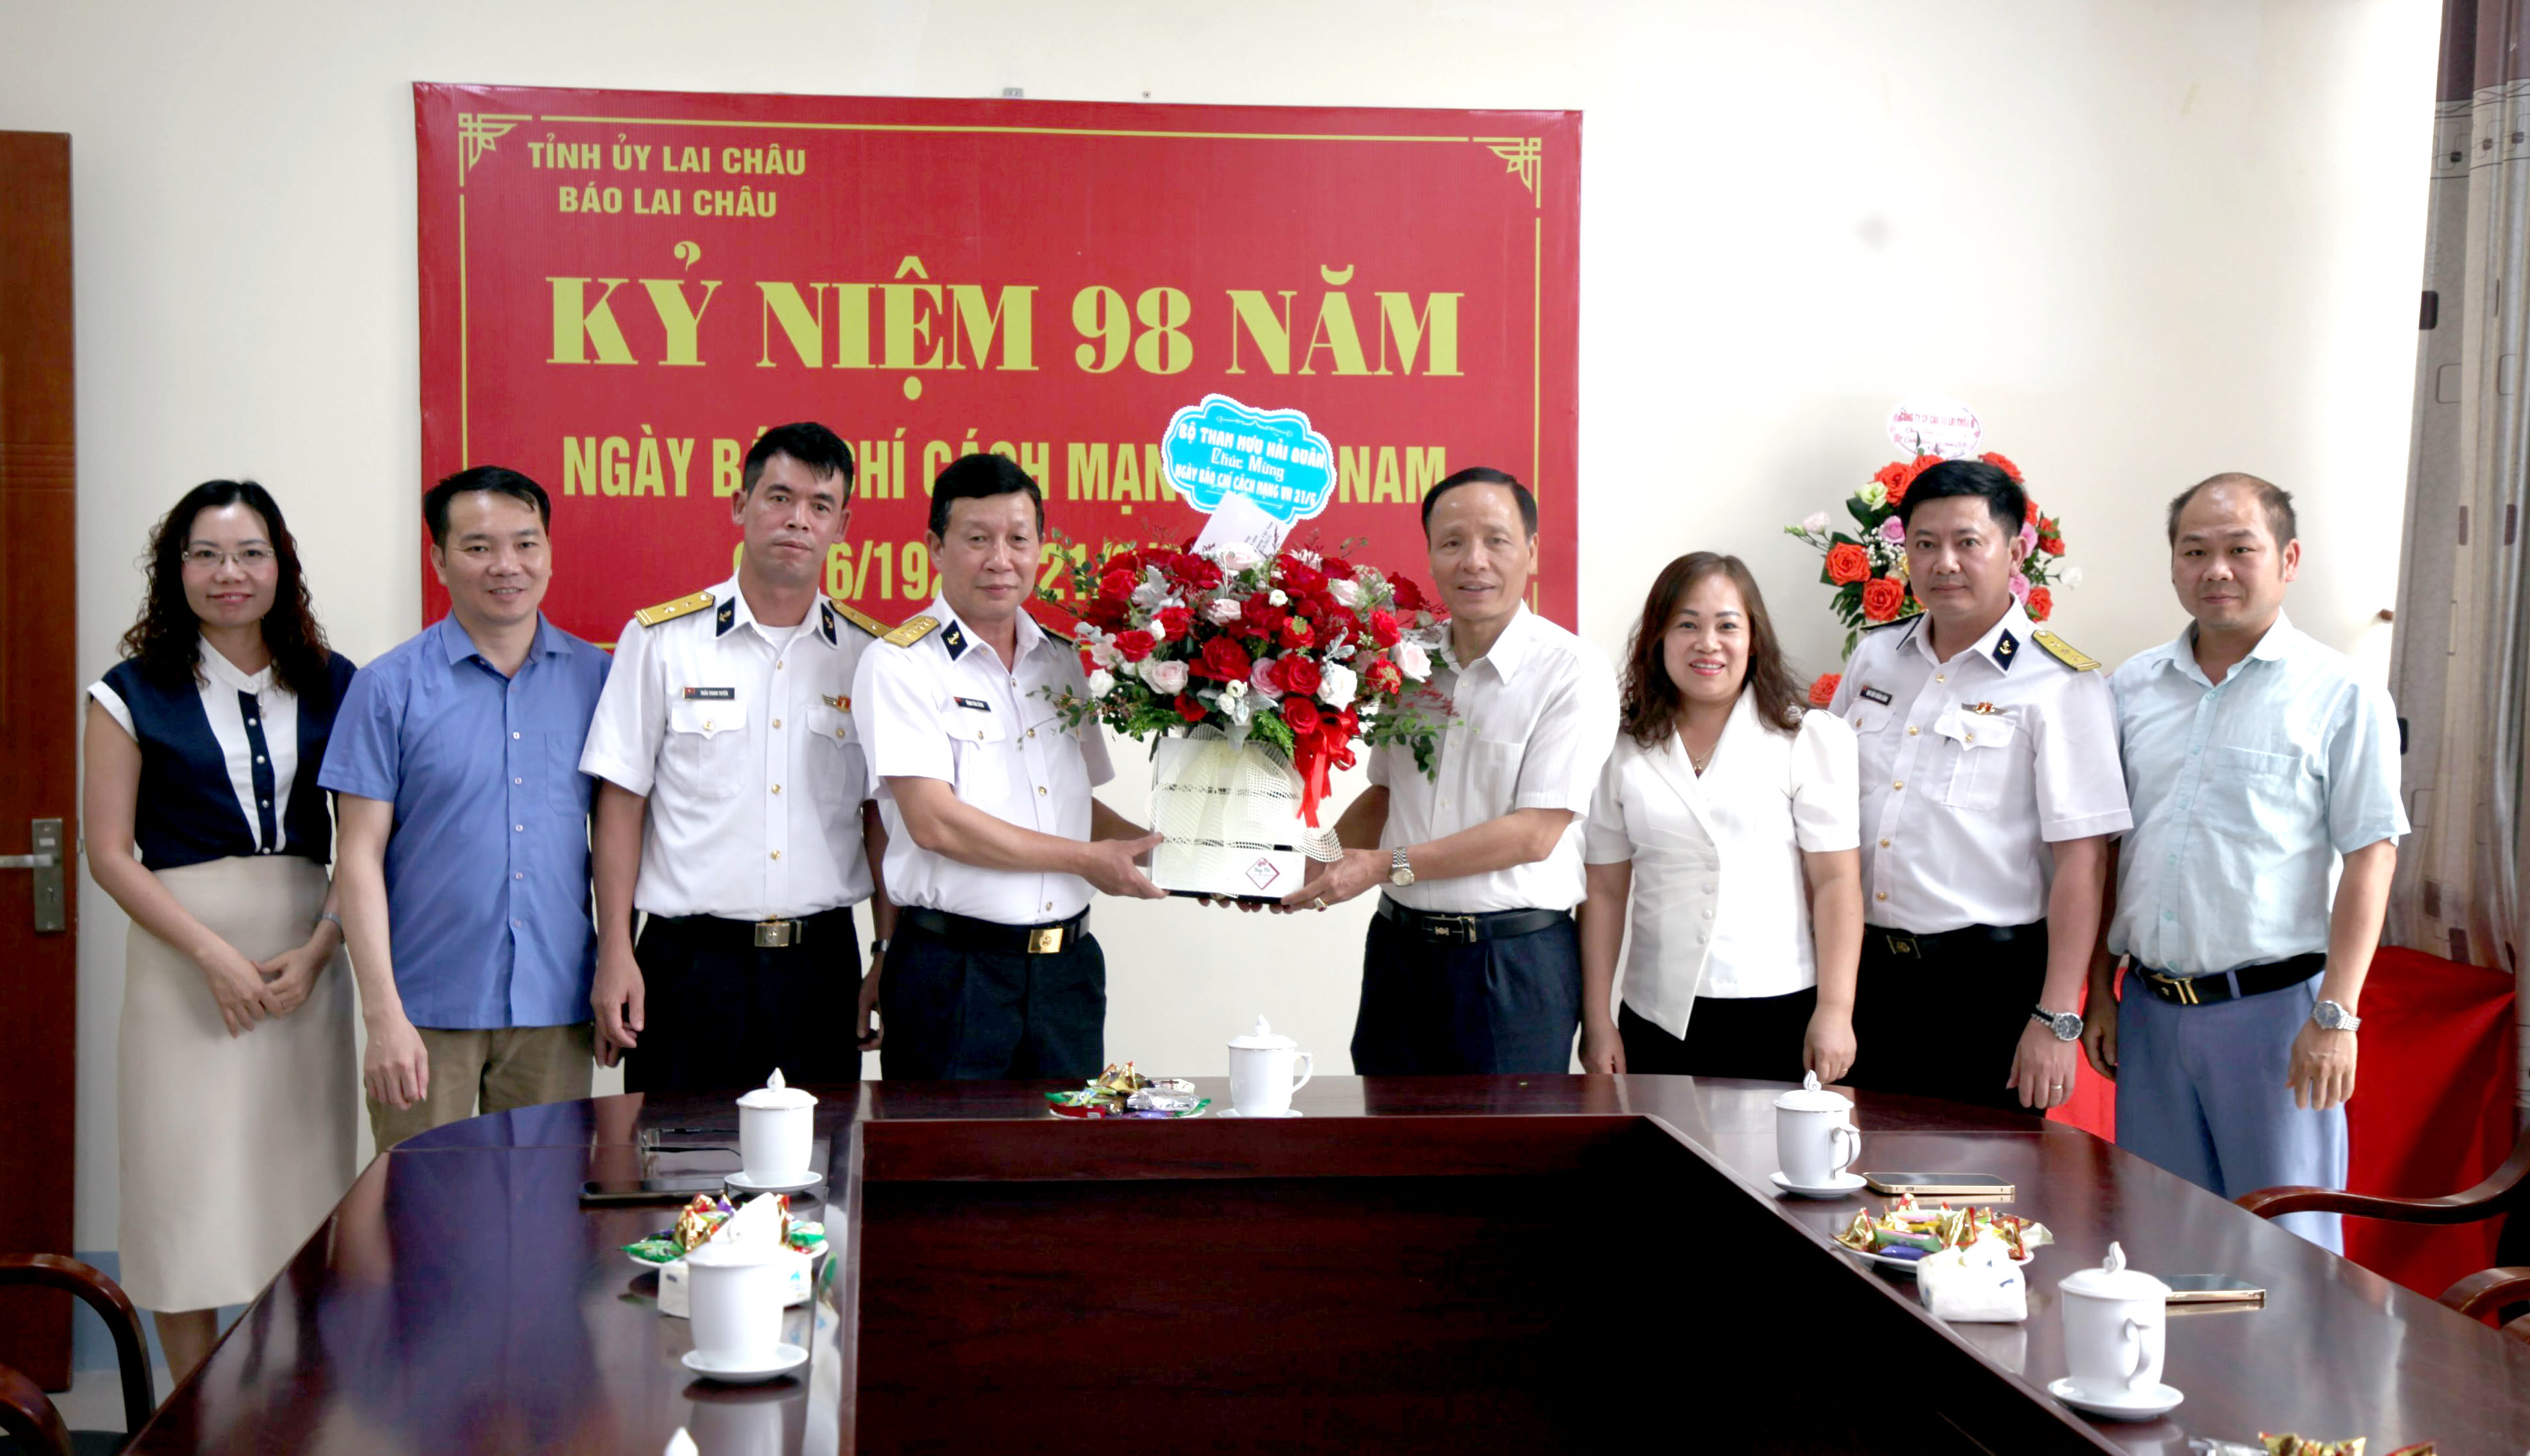 Lãnh đạo Bộ Tham mưu Quân chủng Hải quân, Ban Tuyên giáo Tỉnh ủy tặng hoa chúc mừng Báo Lai Châu